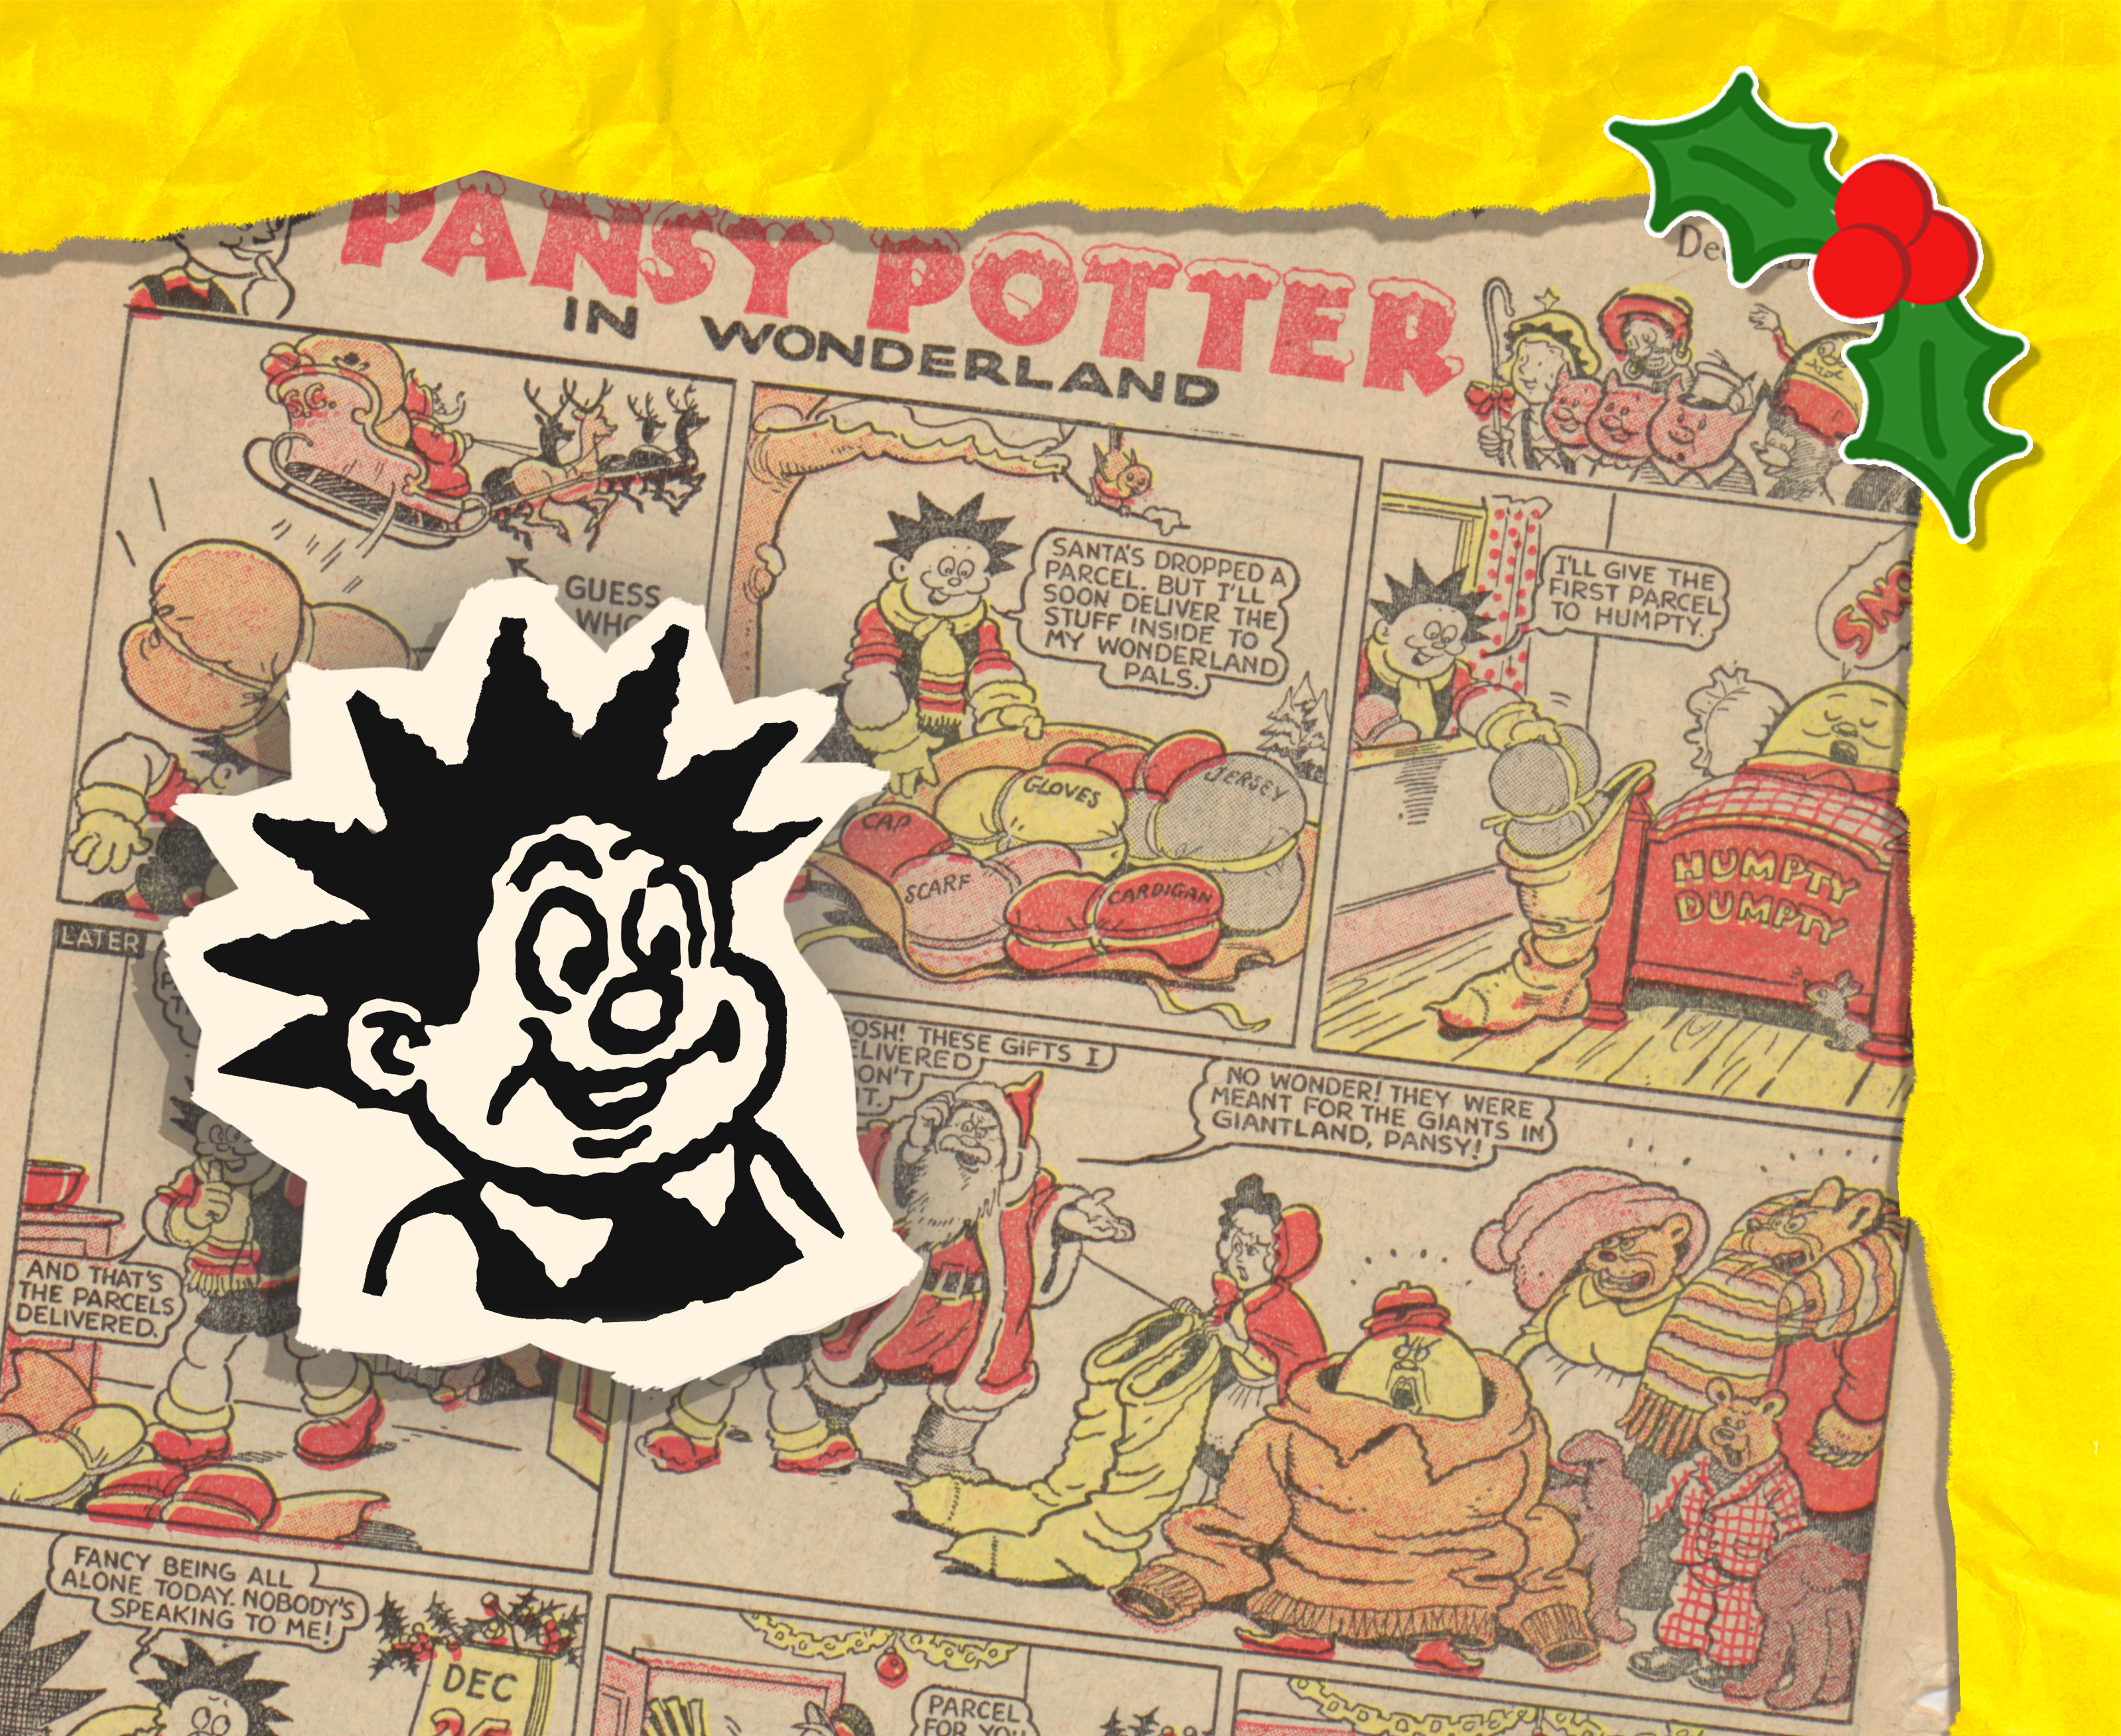 Pansy Potter 1952 Christmas